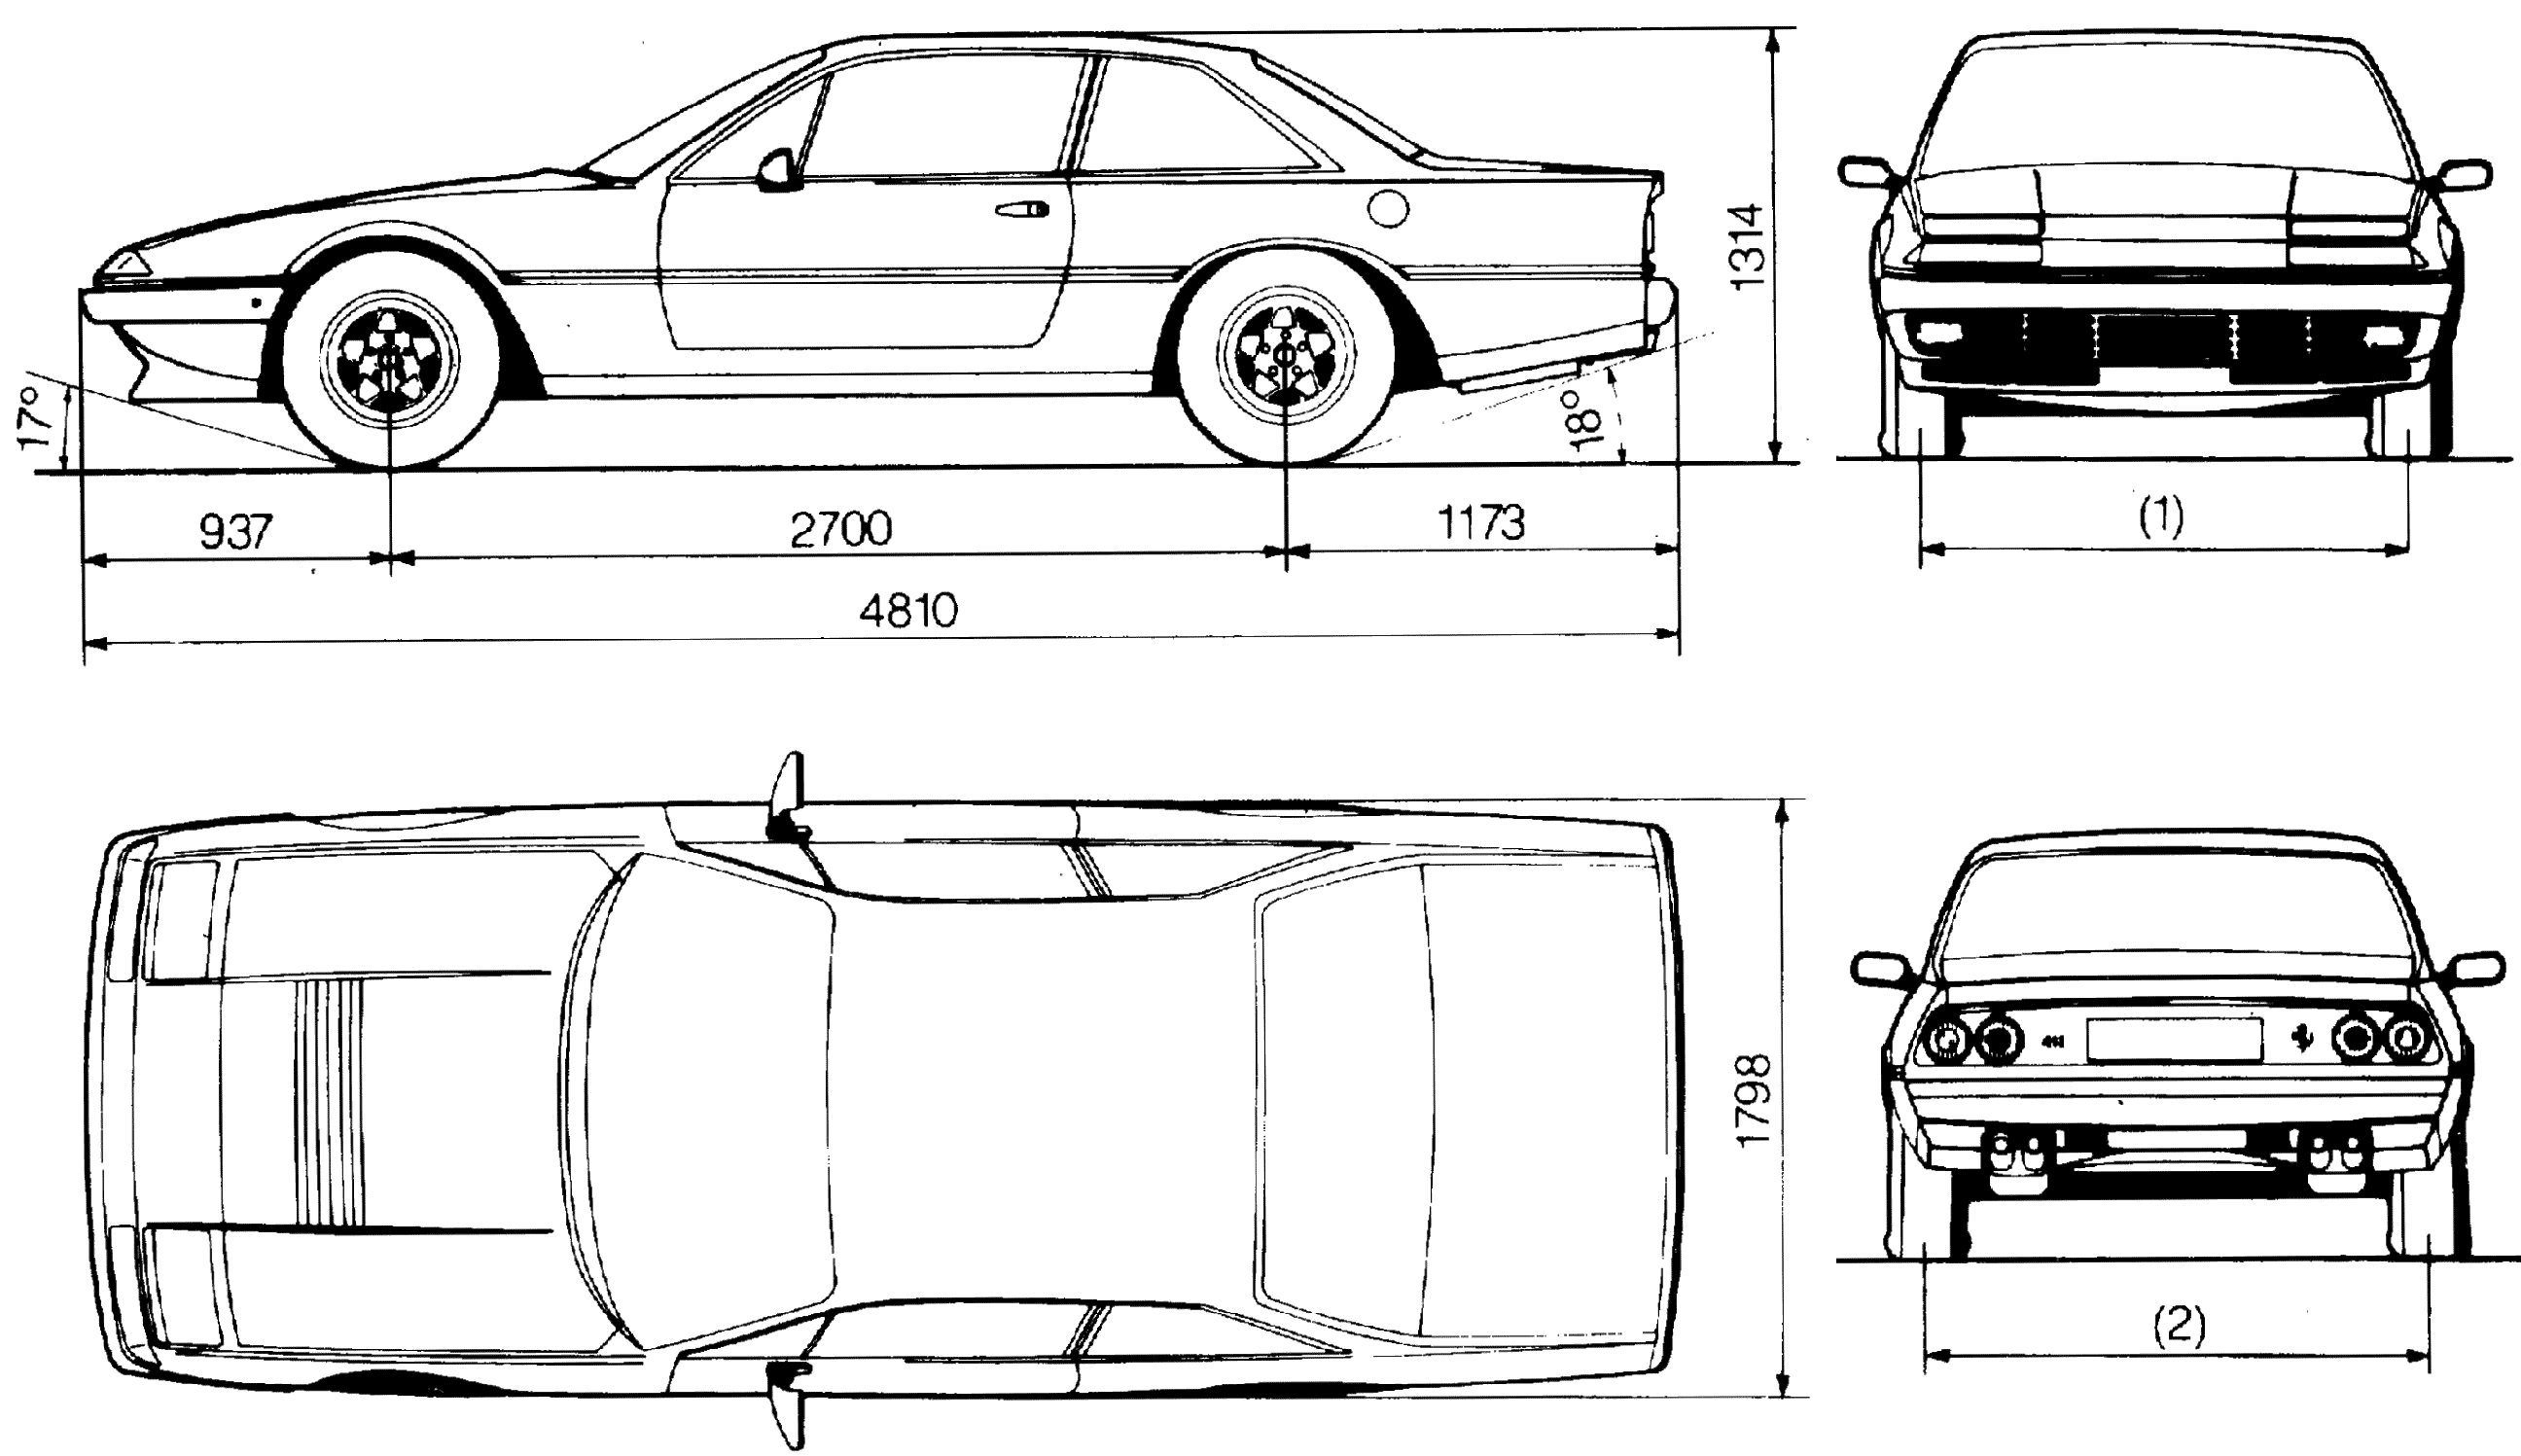 Ferrari 412 blueprint